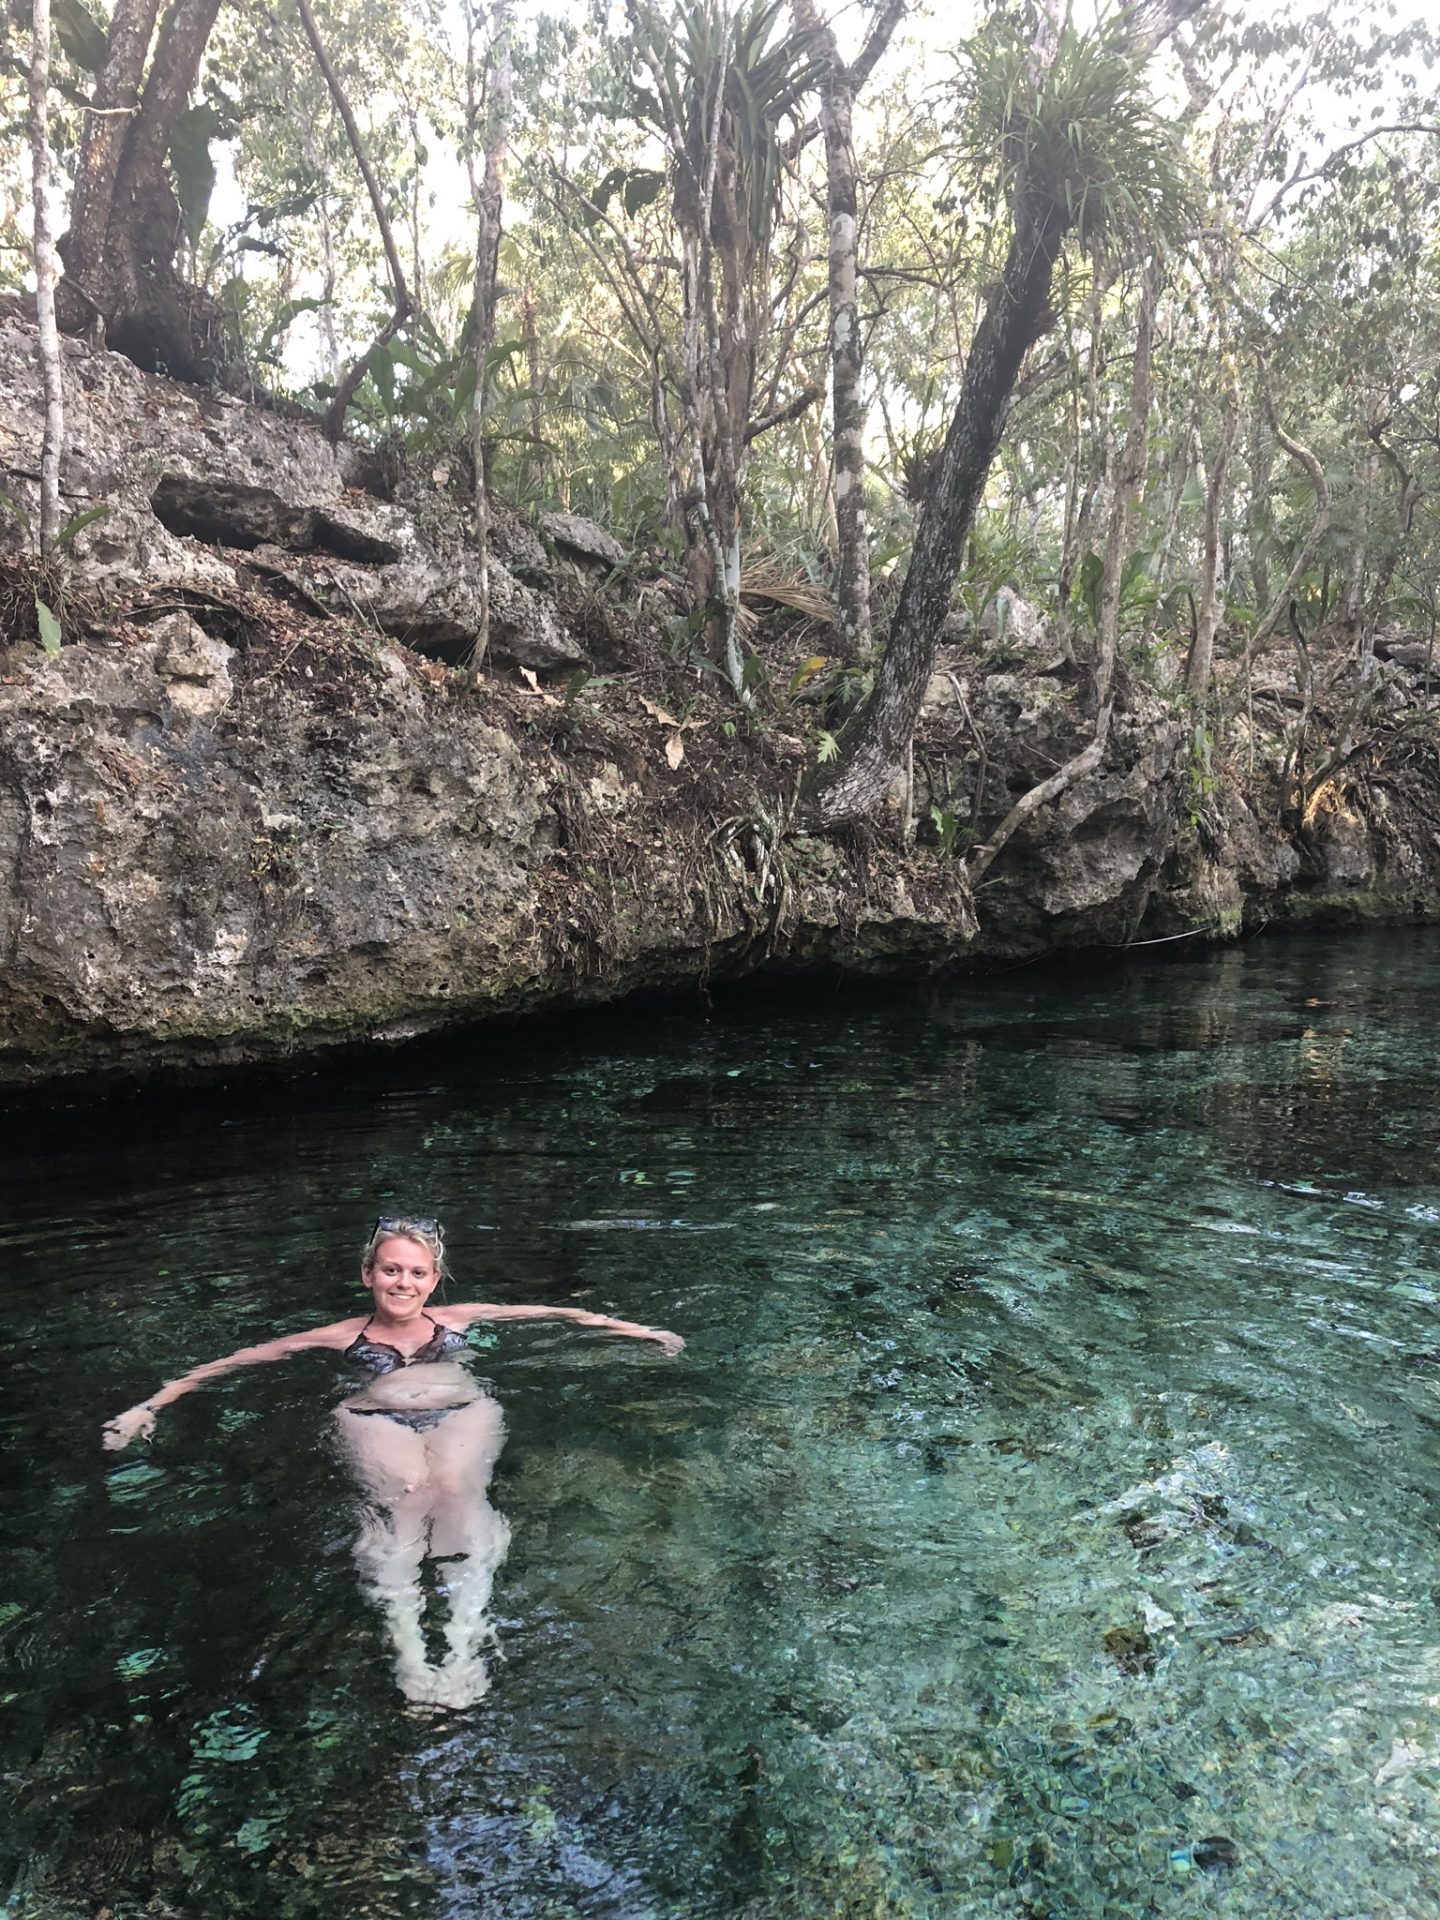 Cenote swimming in Mexico